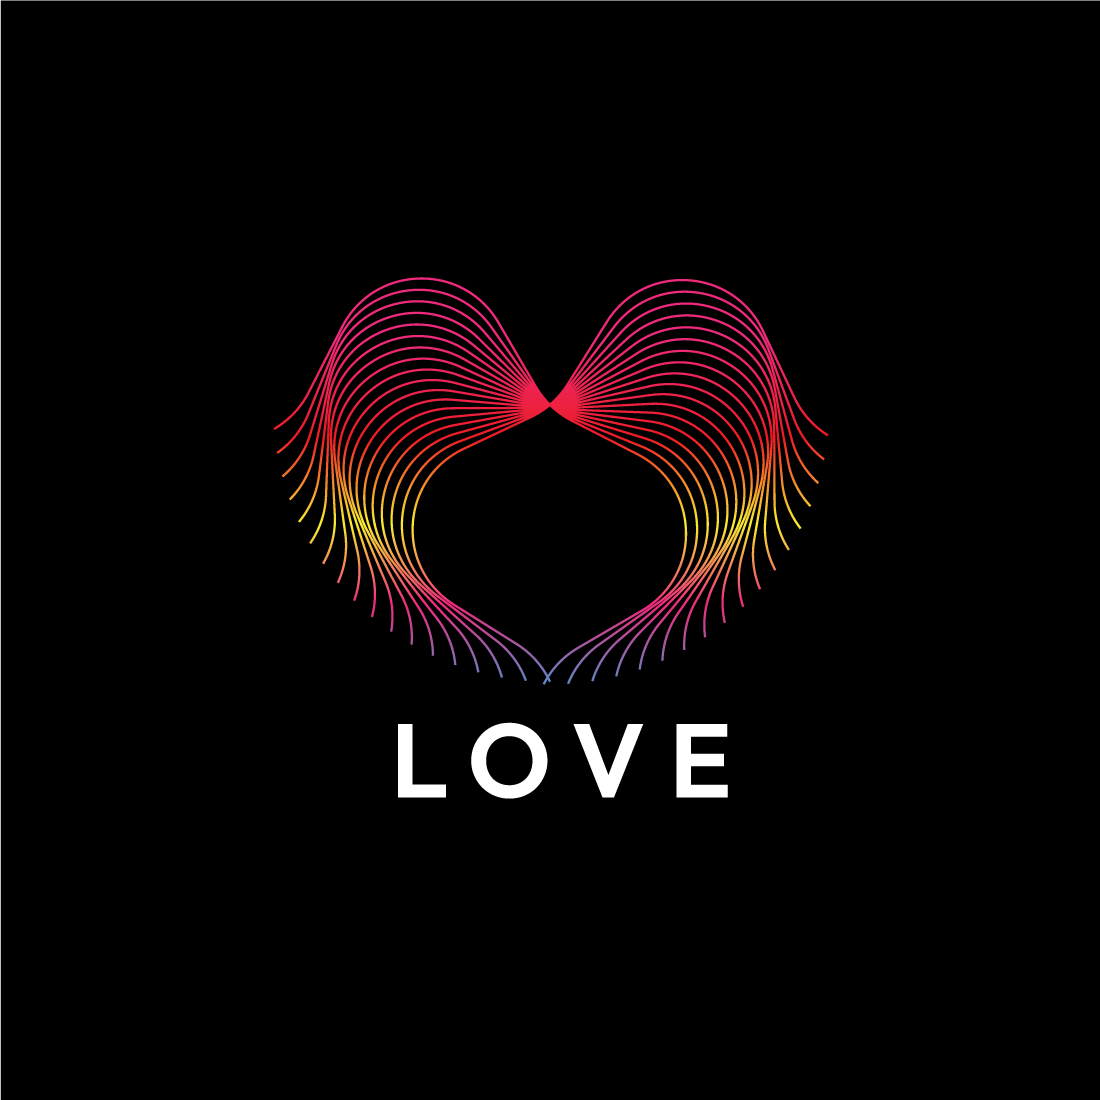 Elegant Line Art Heart & Love Logo Design Bundle cover image.